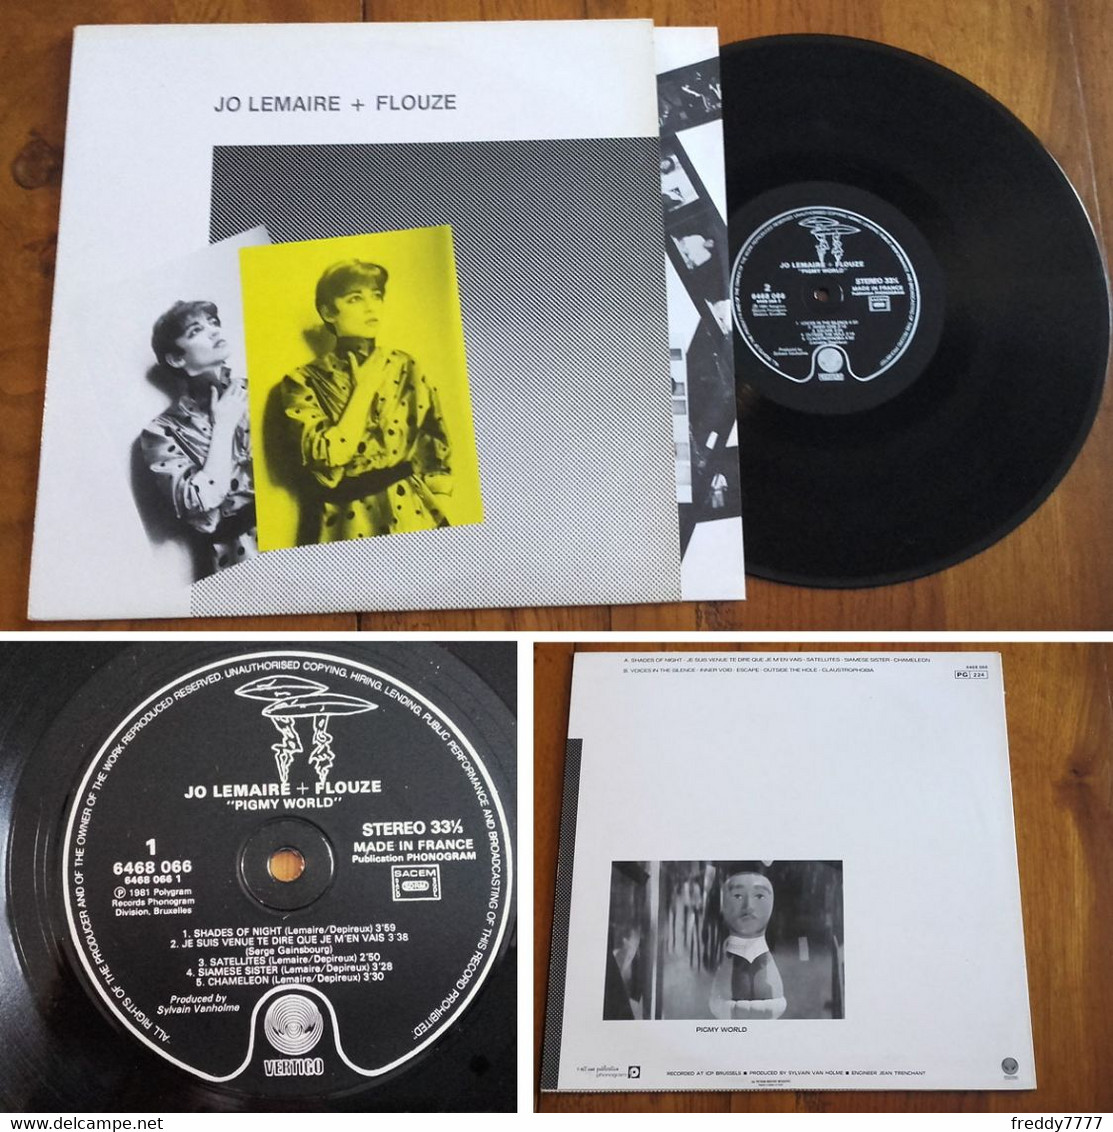 RARE French LP 33t RPM (12") JO LEMAIRE + FLOUZE (Serge Gainsbourg, 1981) - Verzameluitgaven